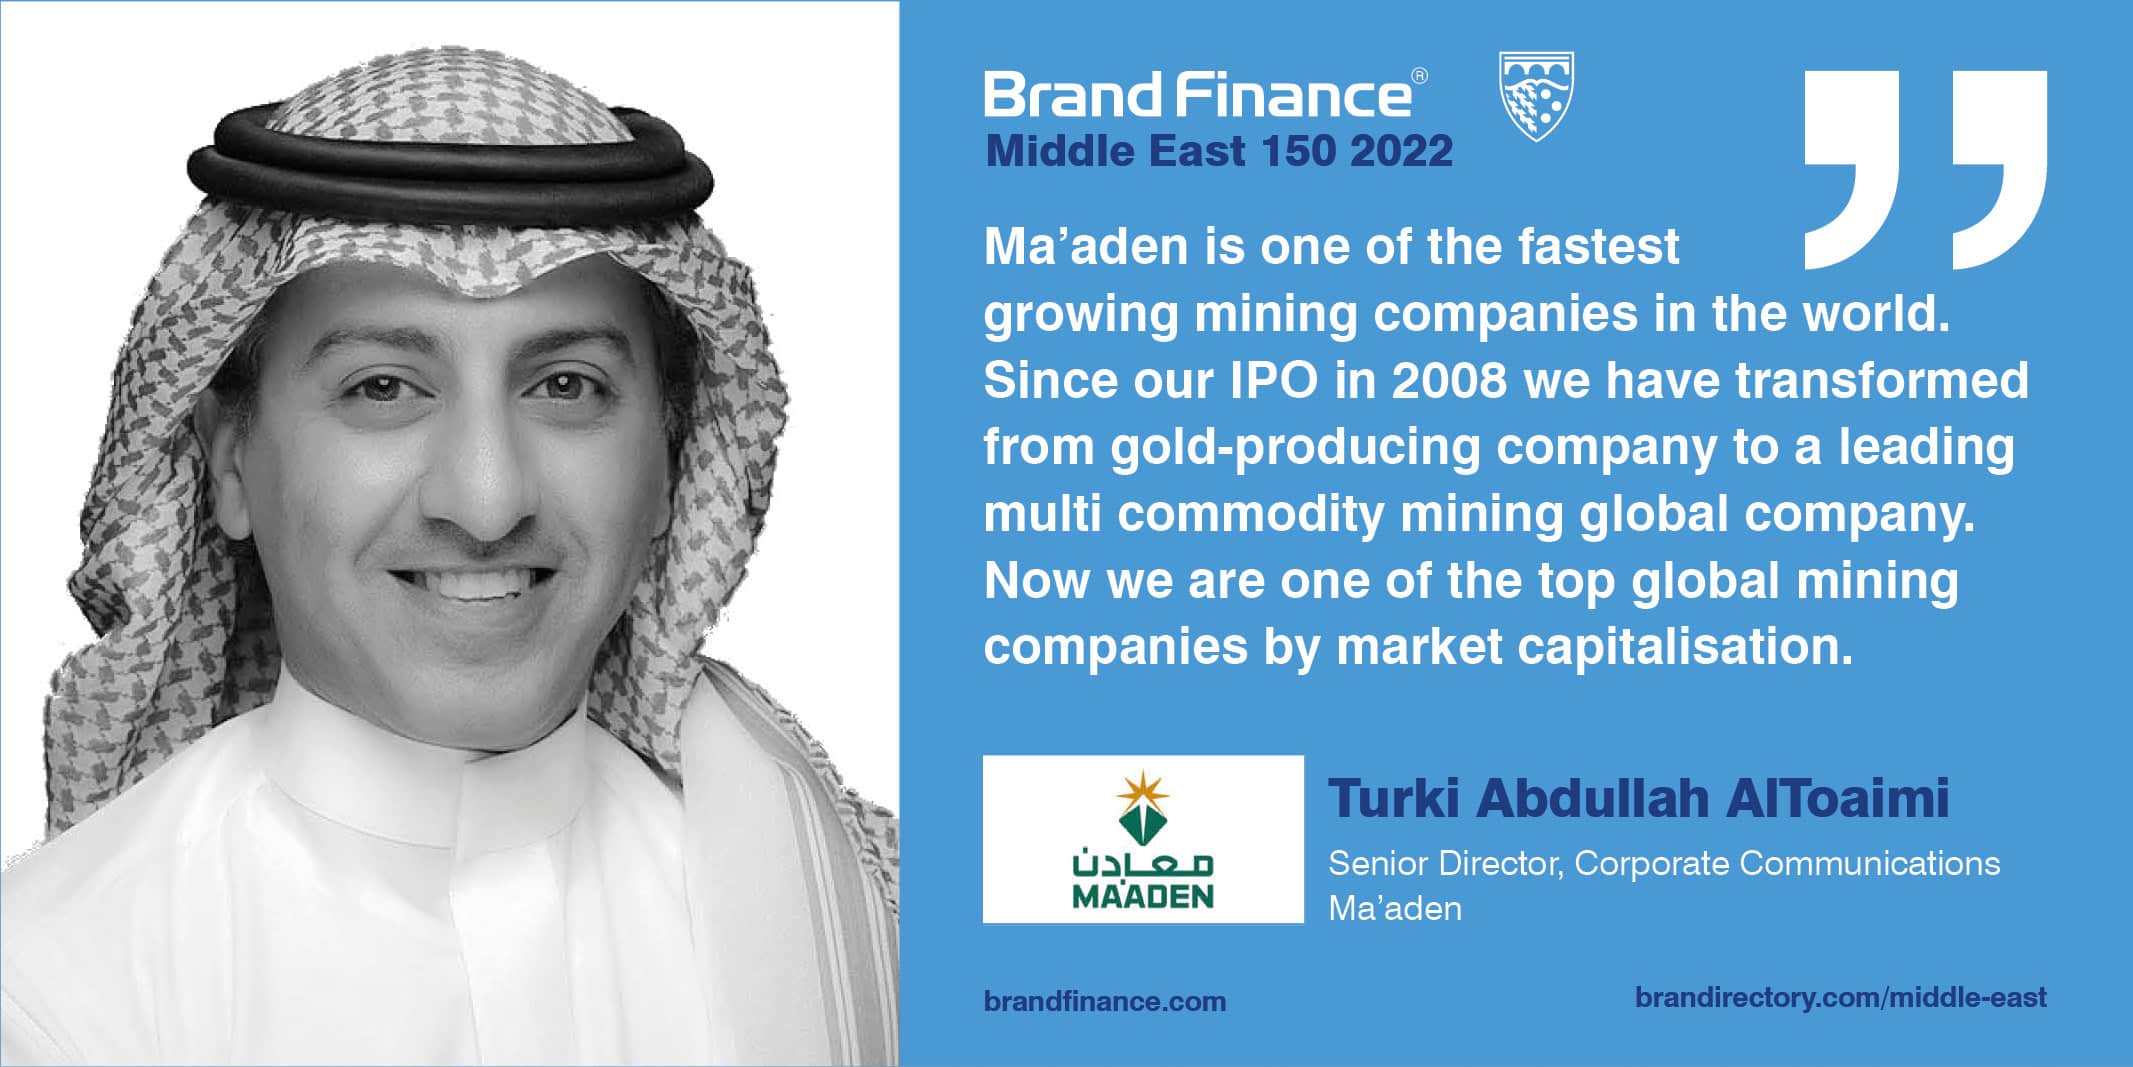  Turki Abdullah AlToaimi, Senior Director, Corporate Communications, Ma'aden